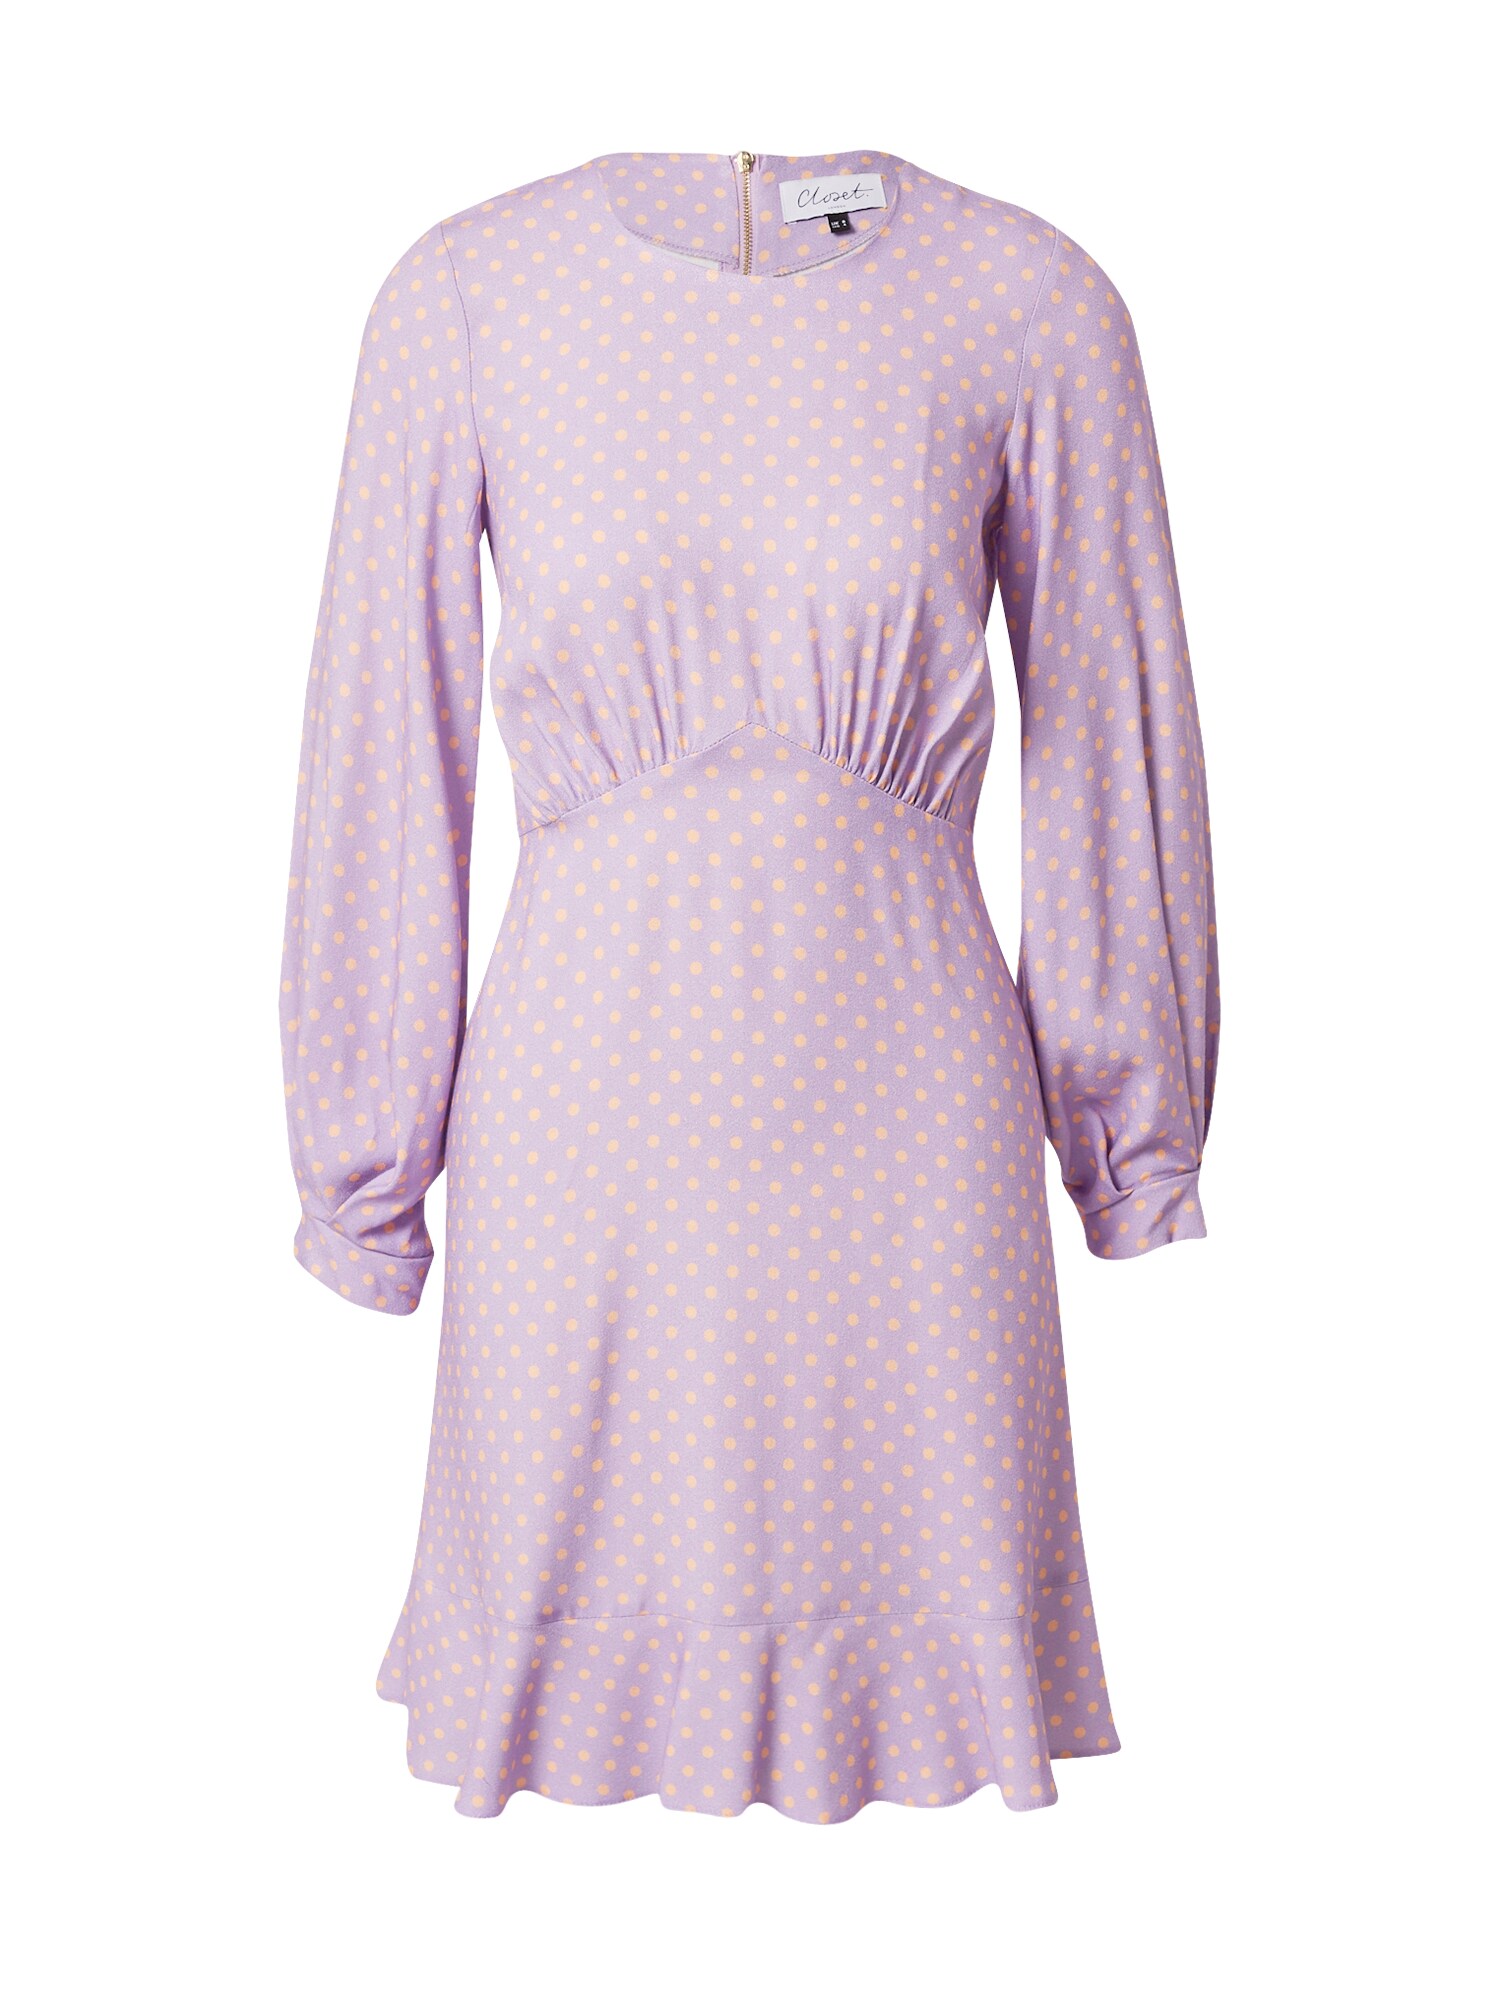 Closet London Suknelė 'London Pephem' šafrano spalva / purpurinė